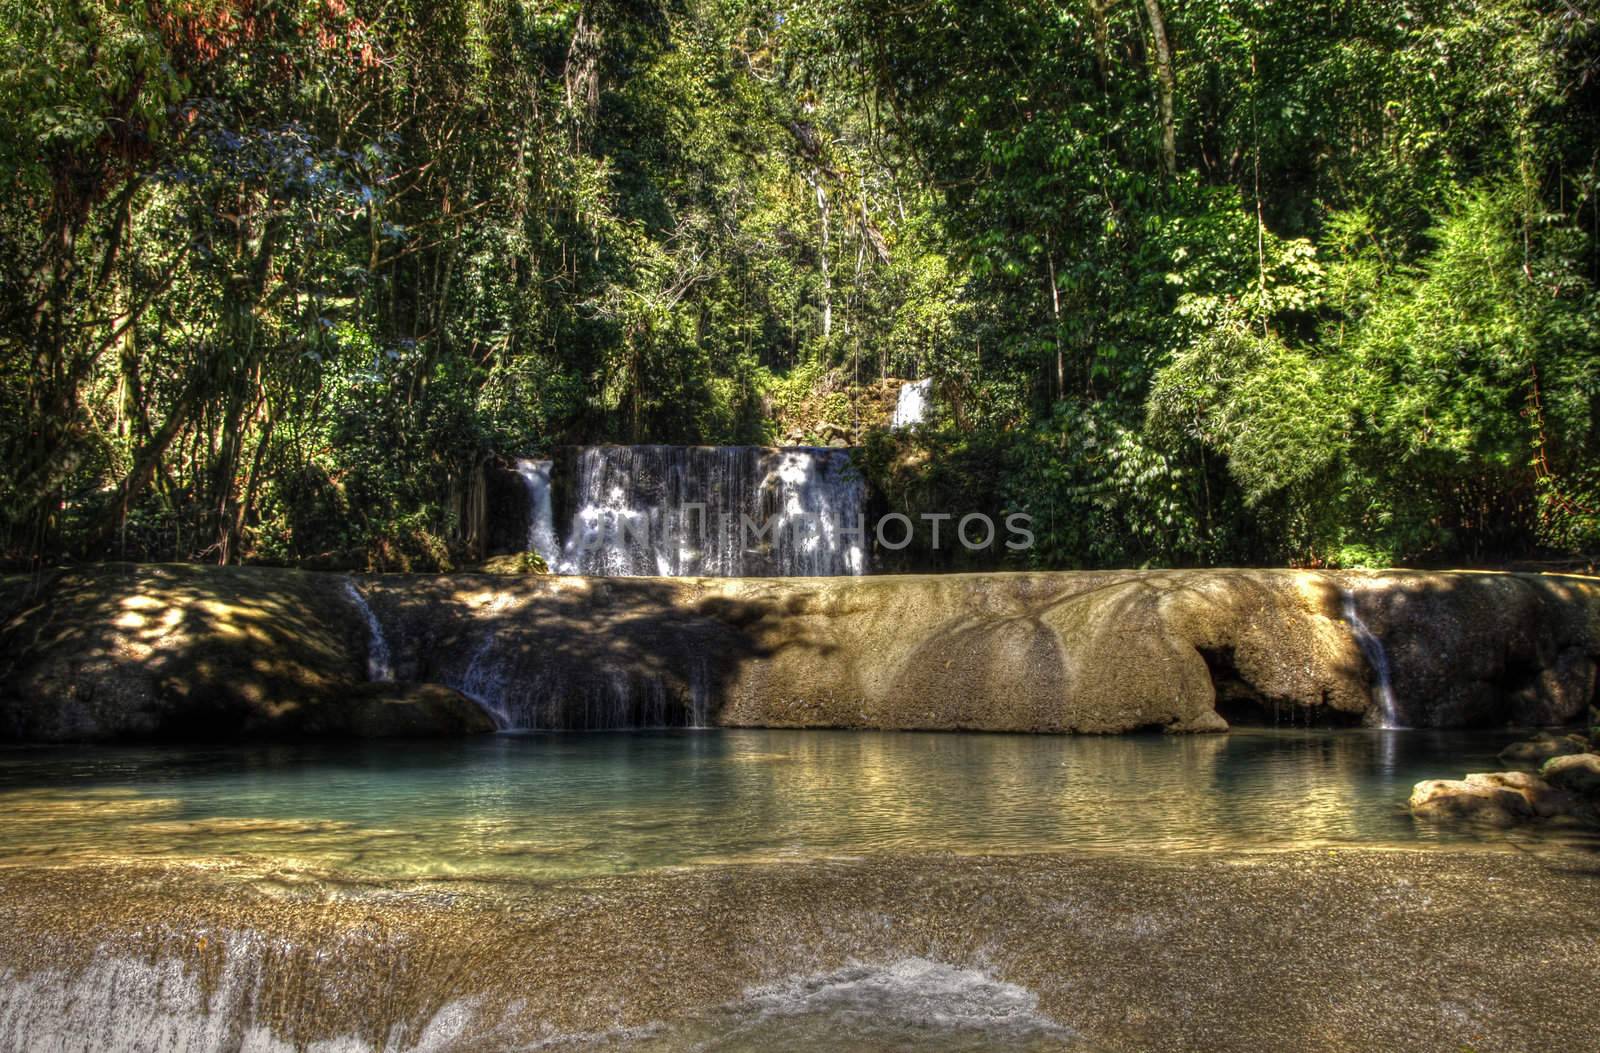 Jamaican Falls 82 by dbriyul